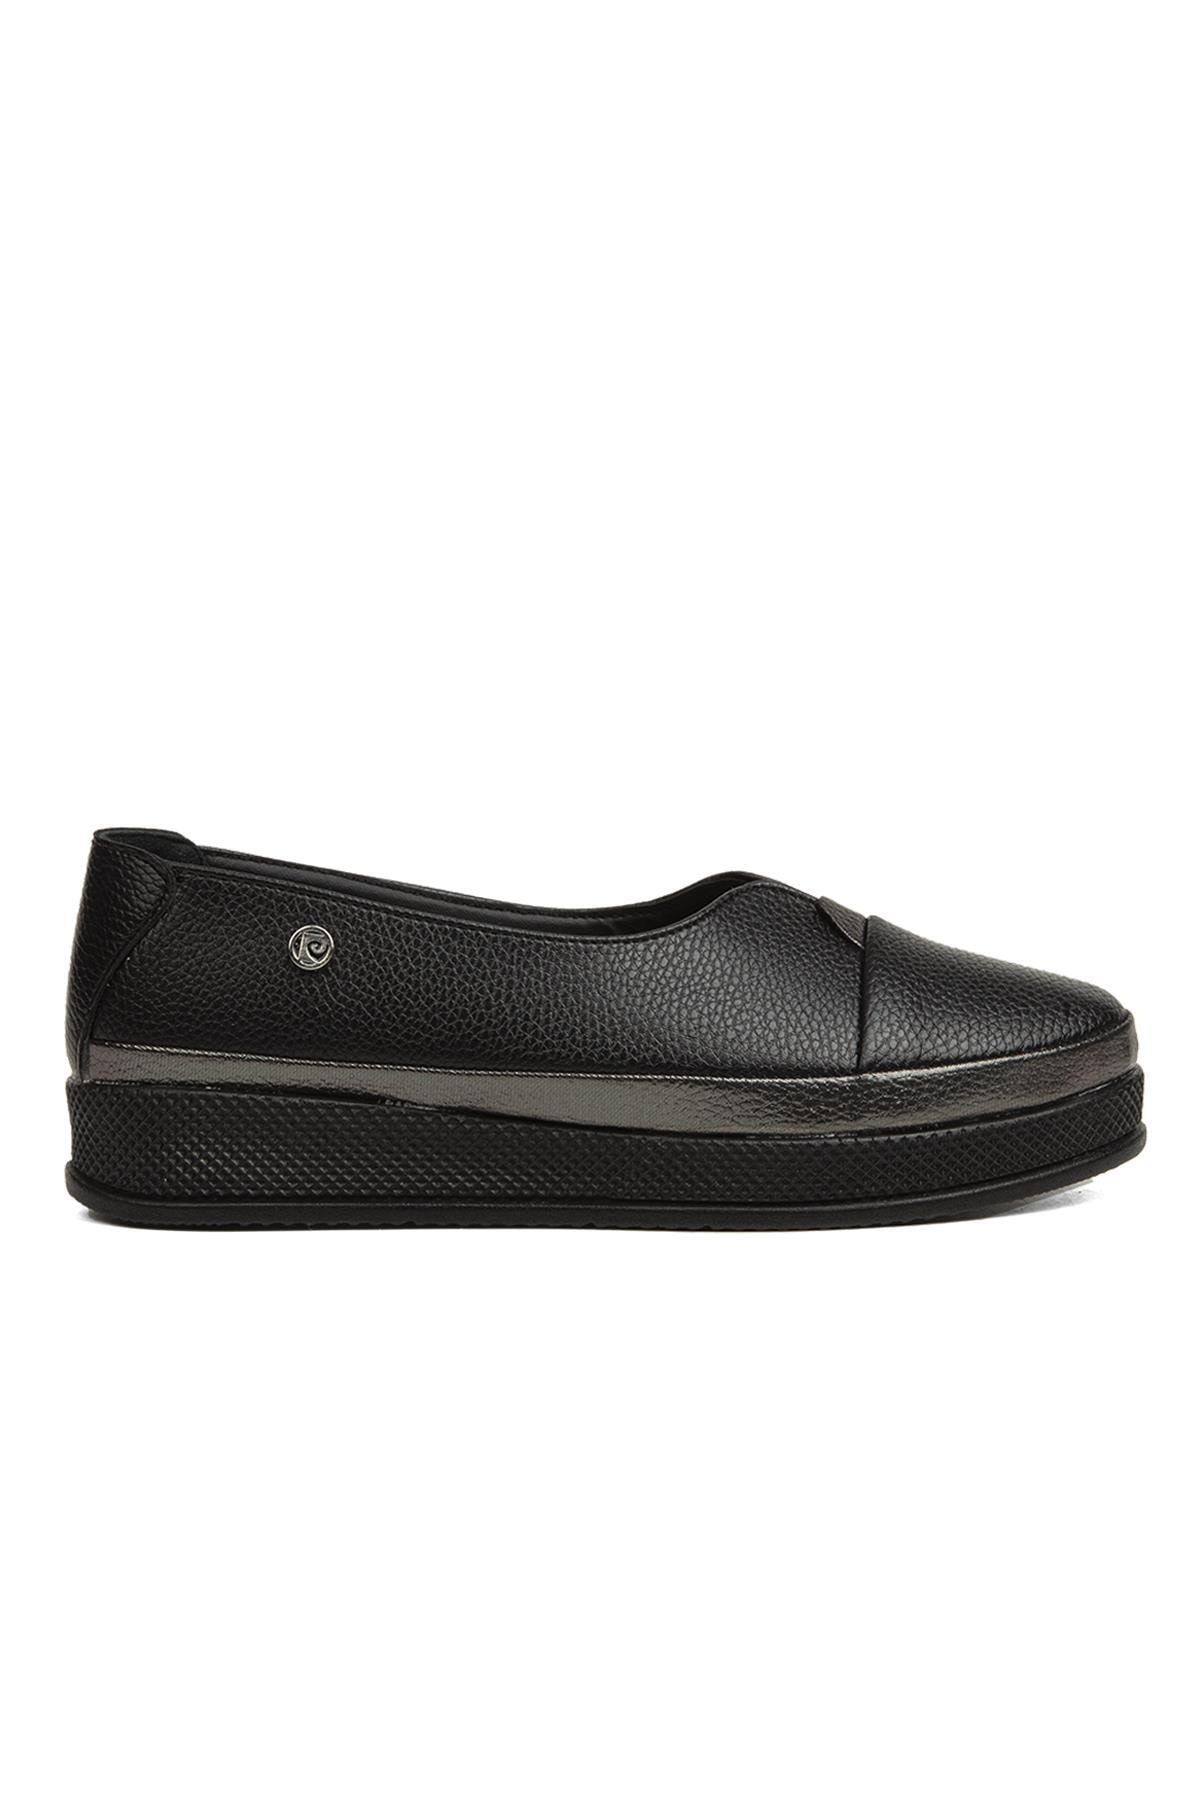 Pierre Cardin ® | Pc-51922-3530 Siyah - Kadın Günlük Ayakkabı